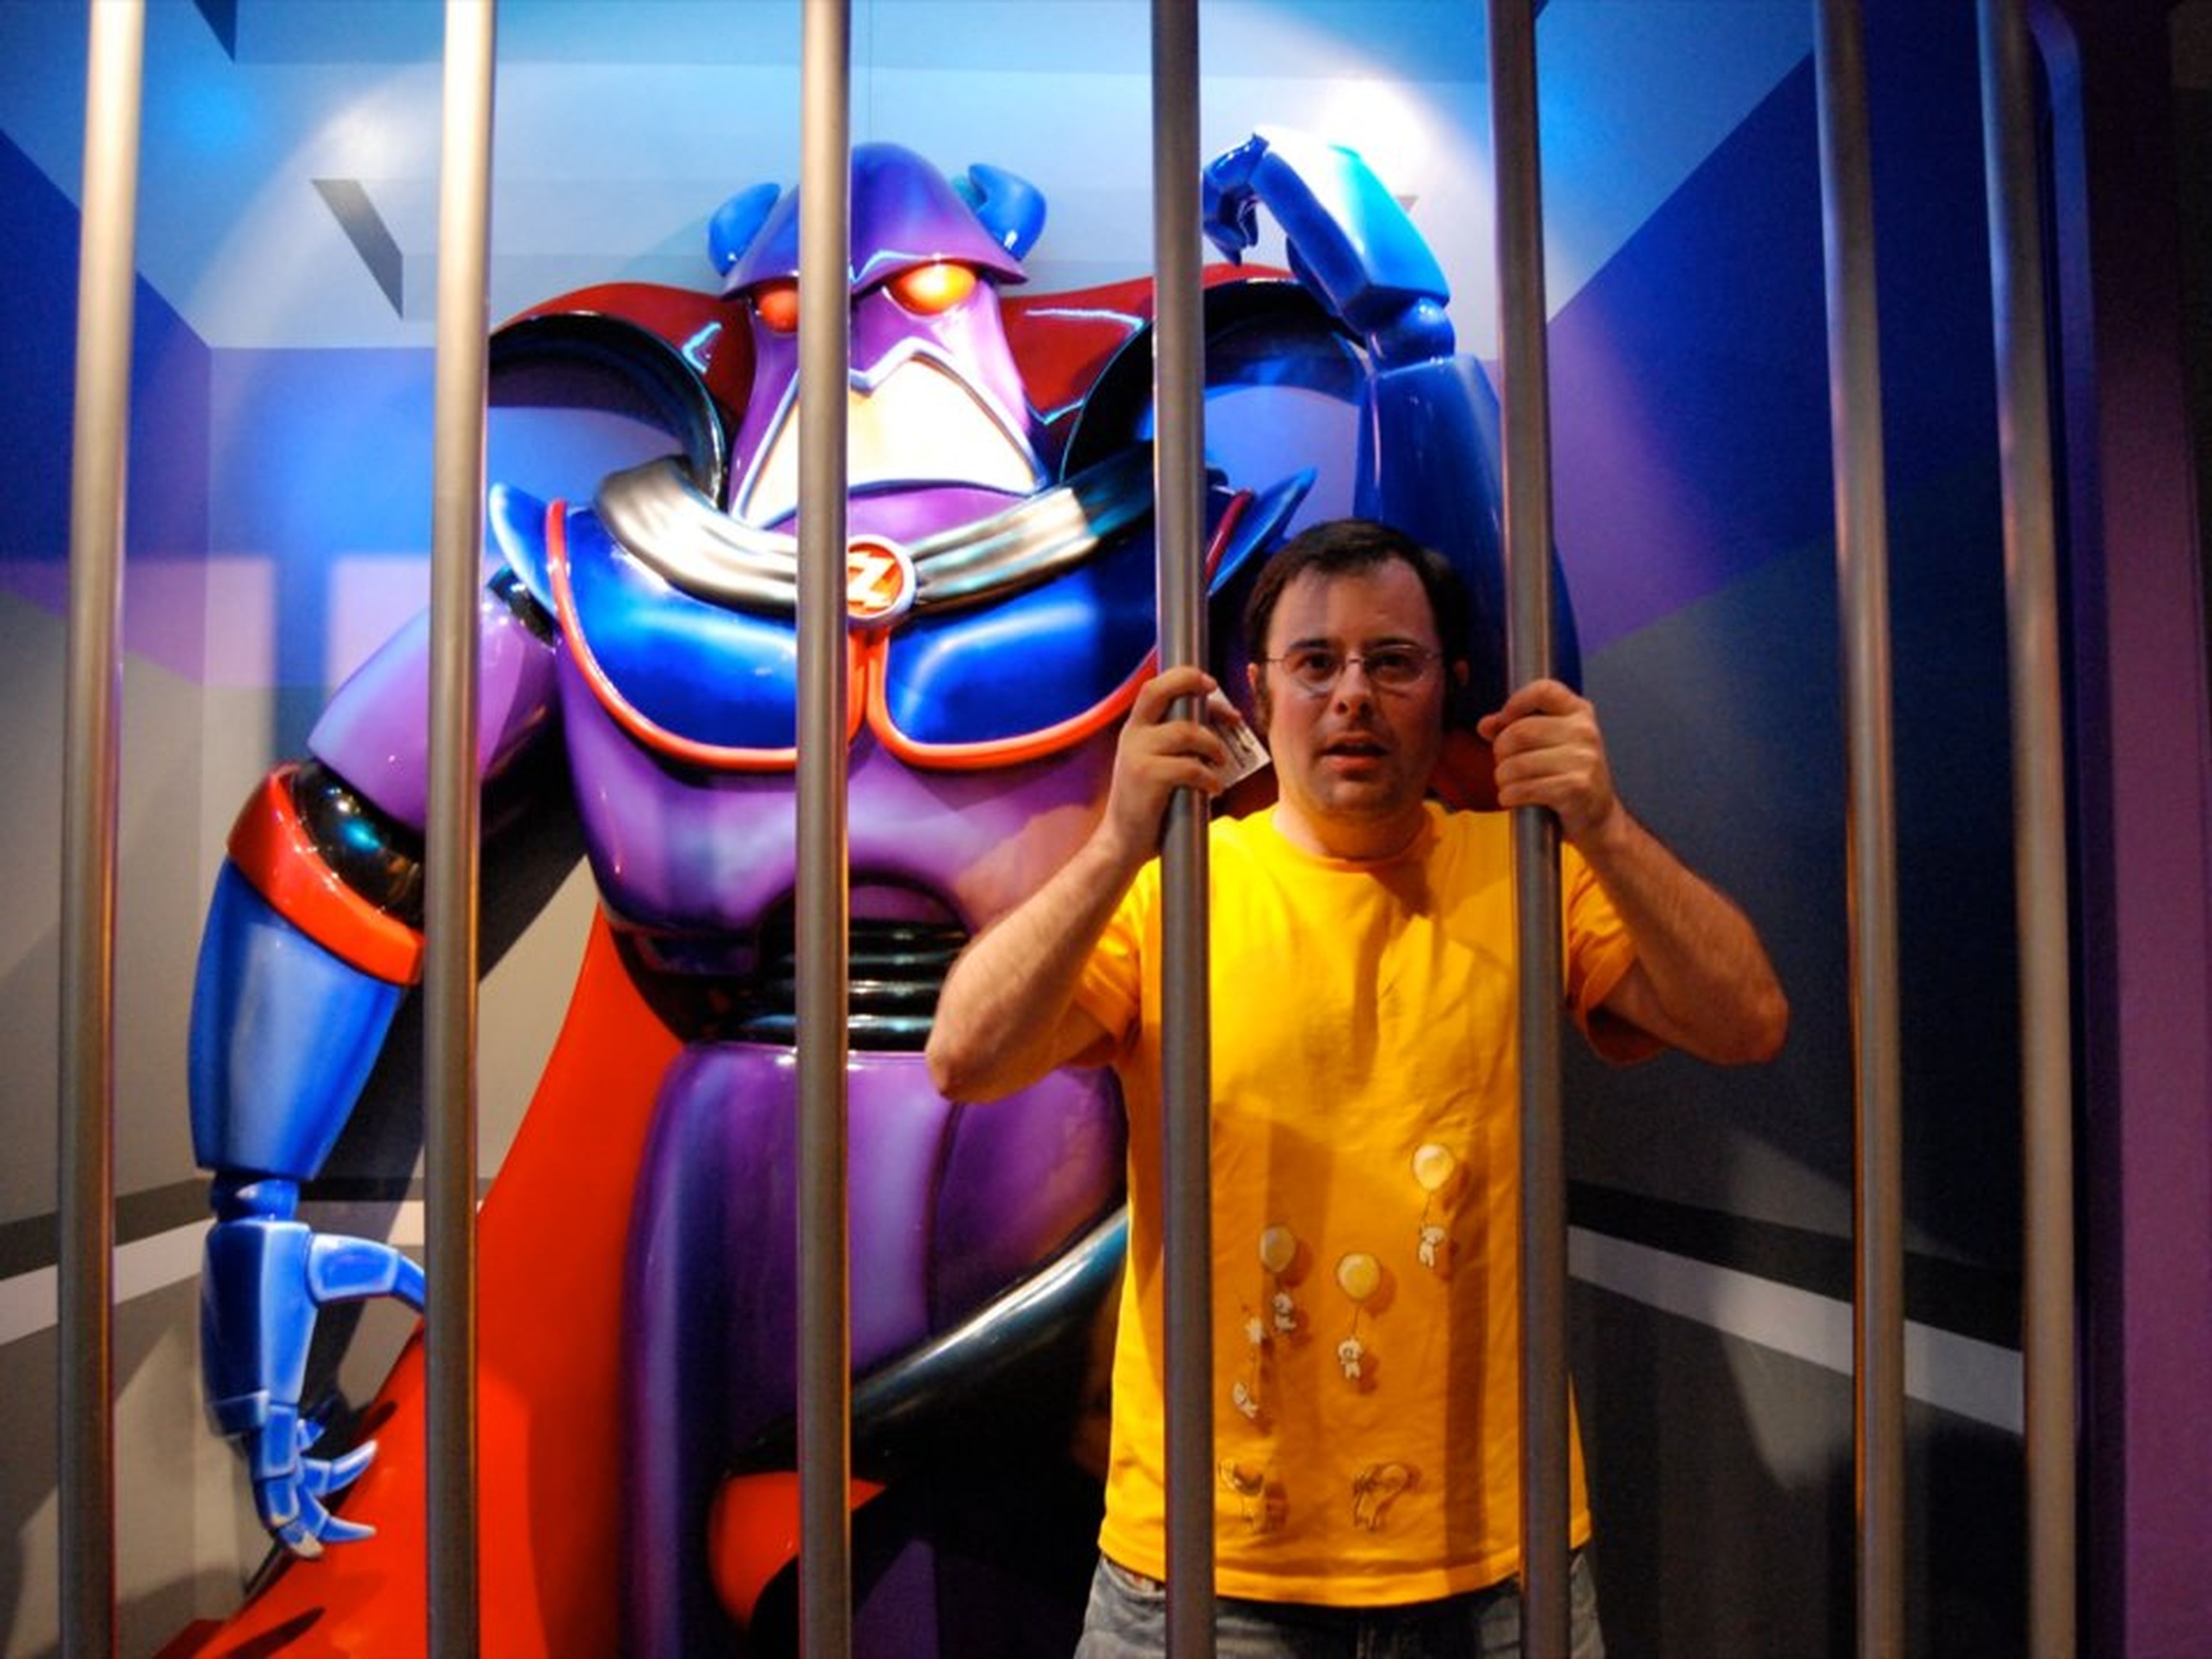 La verdadera cárcel de Disney probablemente sea menos divertida.